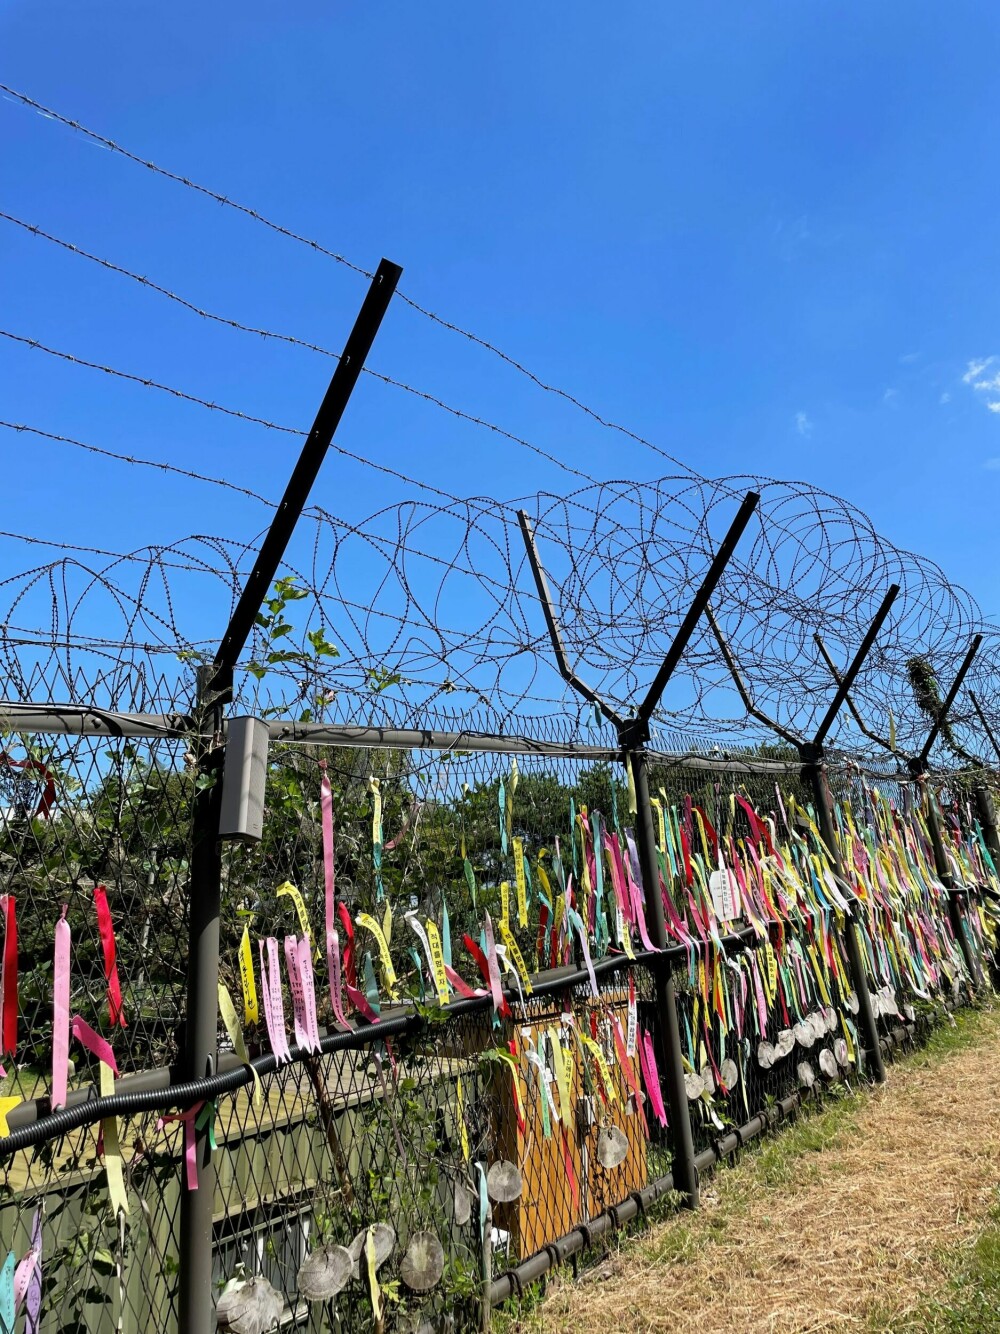 <b>MINNES:</b> Mange koreanere kommer til DMZ for å minnes sine slektninger i nord og henger opp silkebånd som symboler for håp.